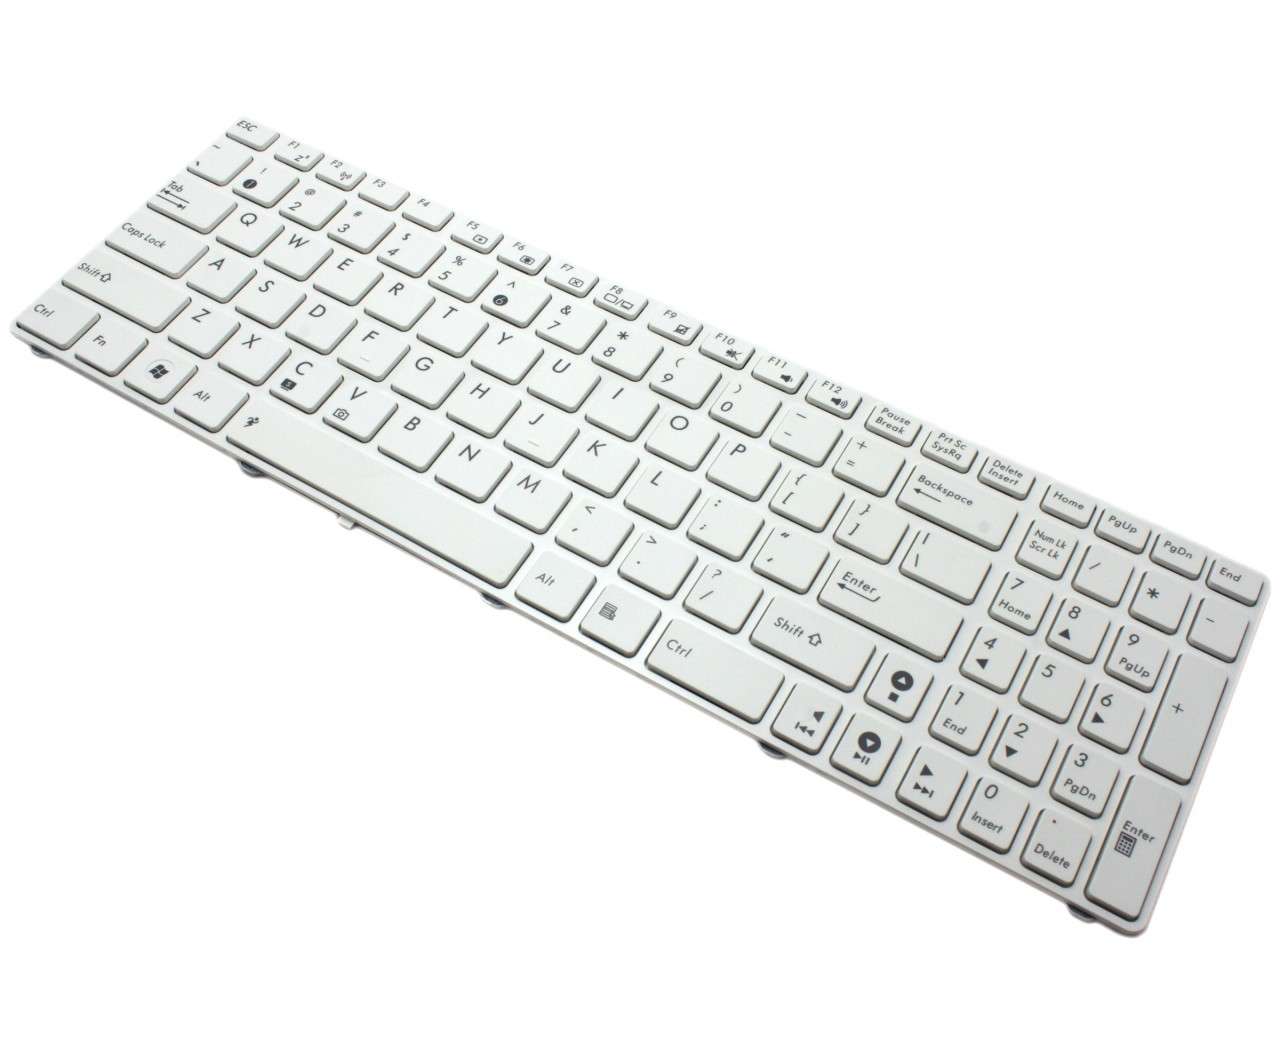 Tastatura Asus k53 alba